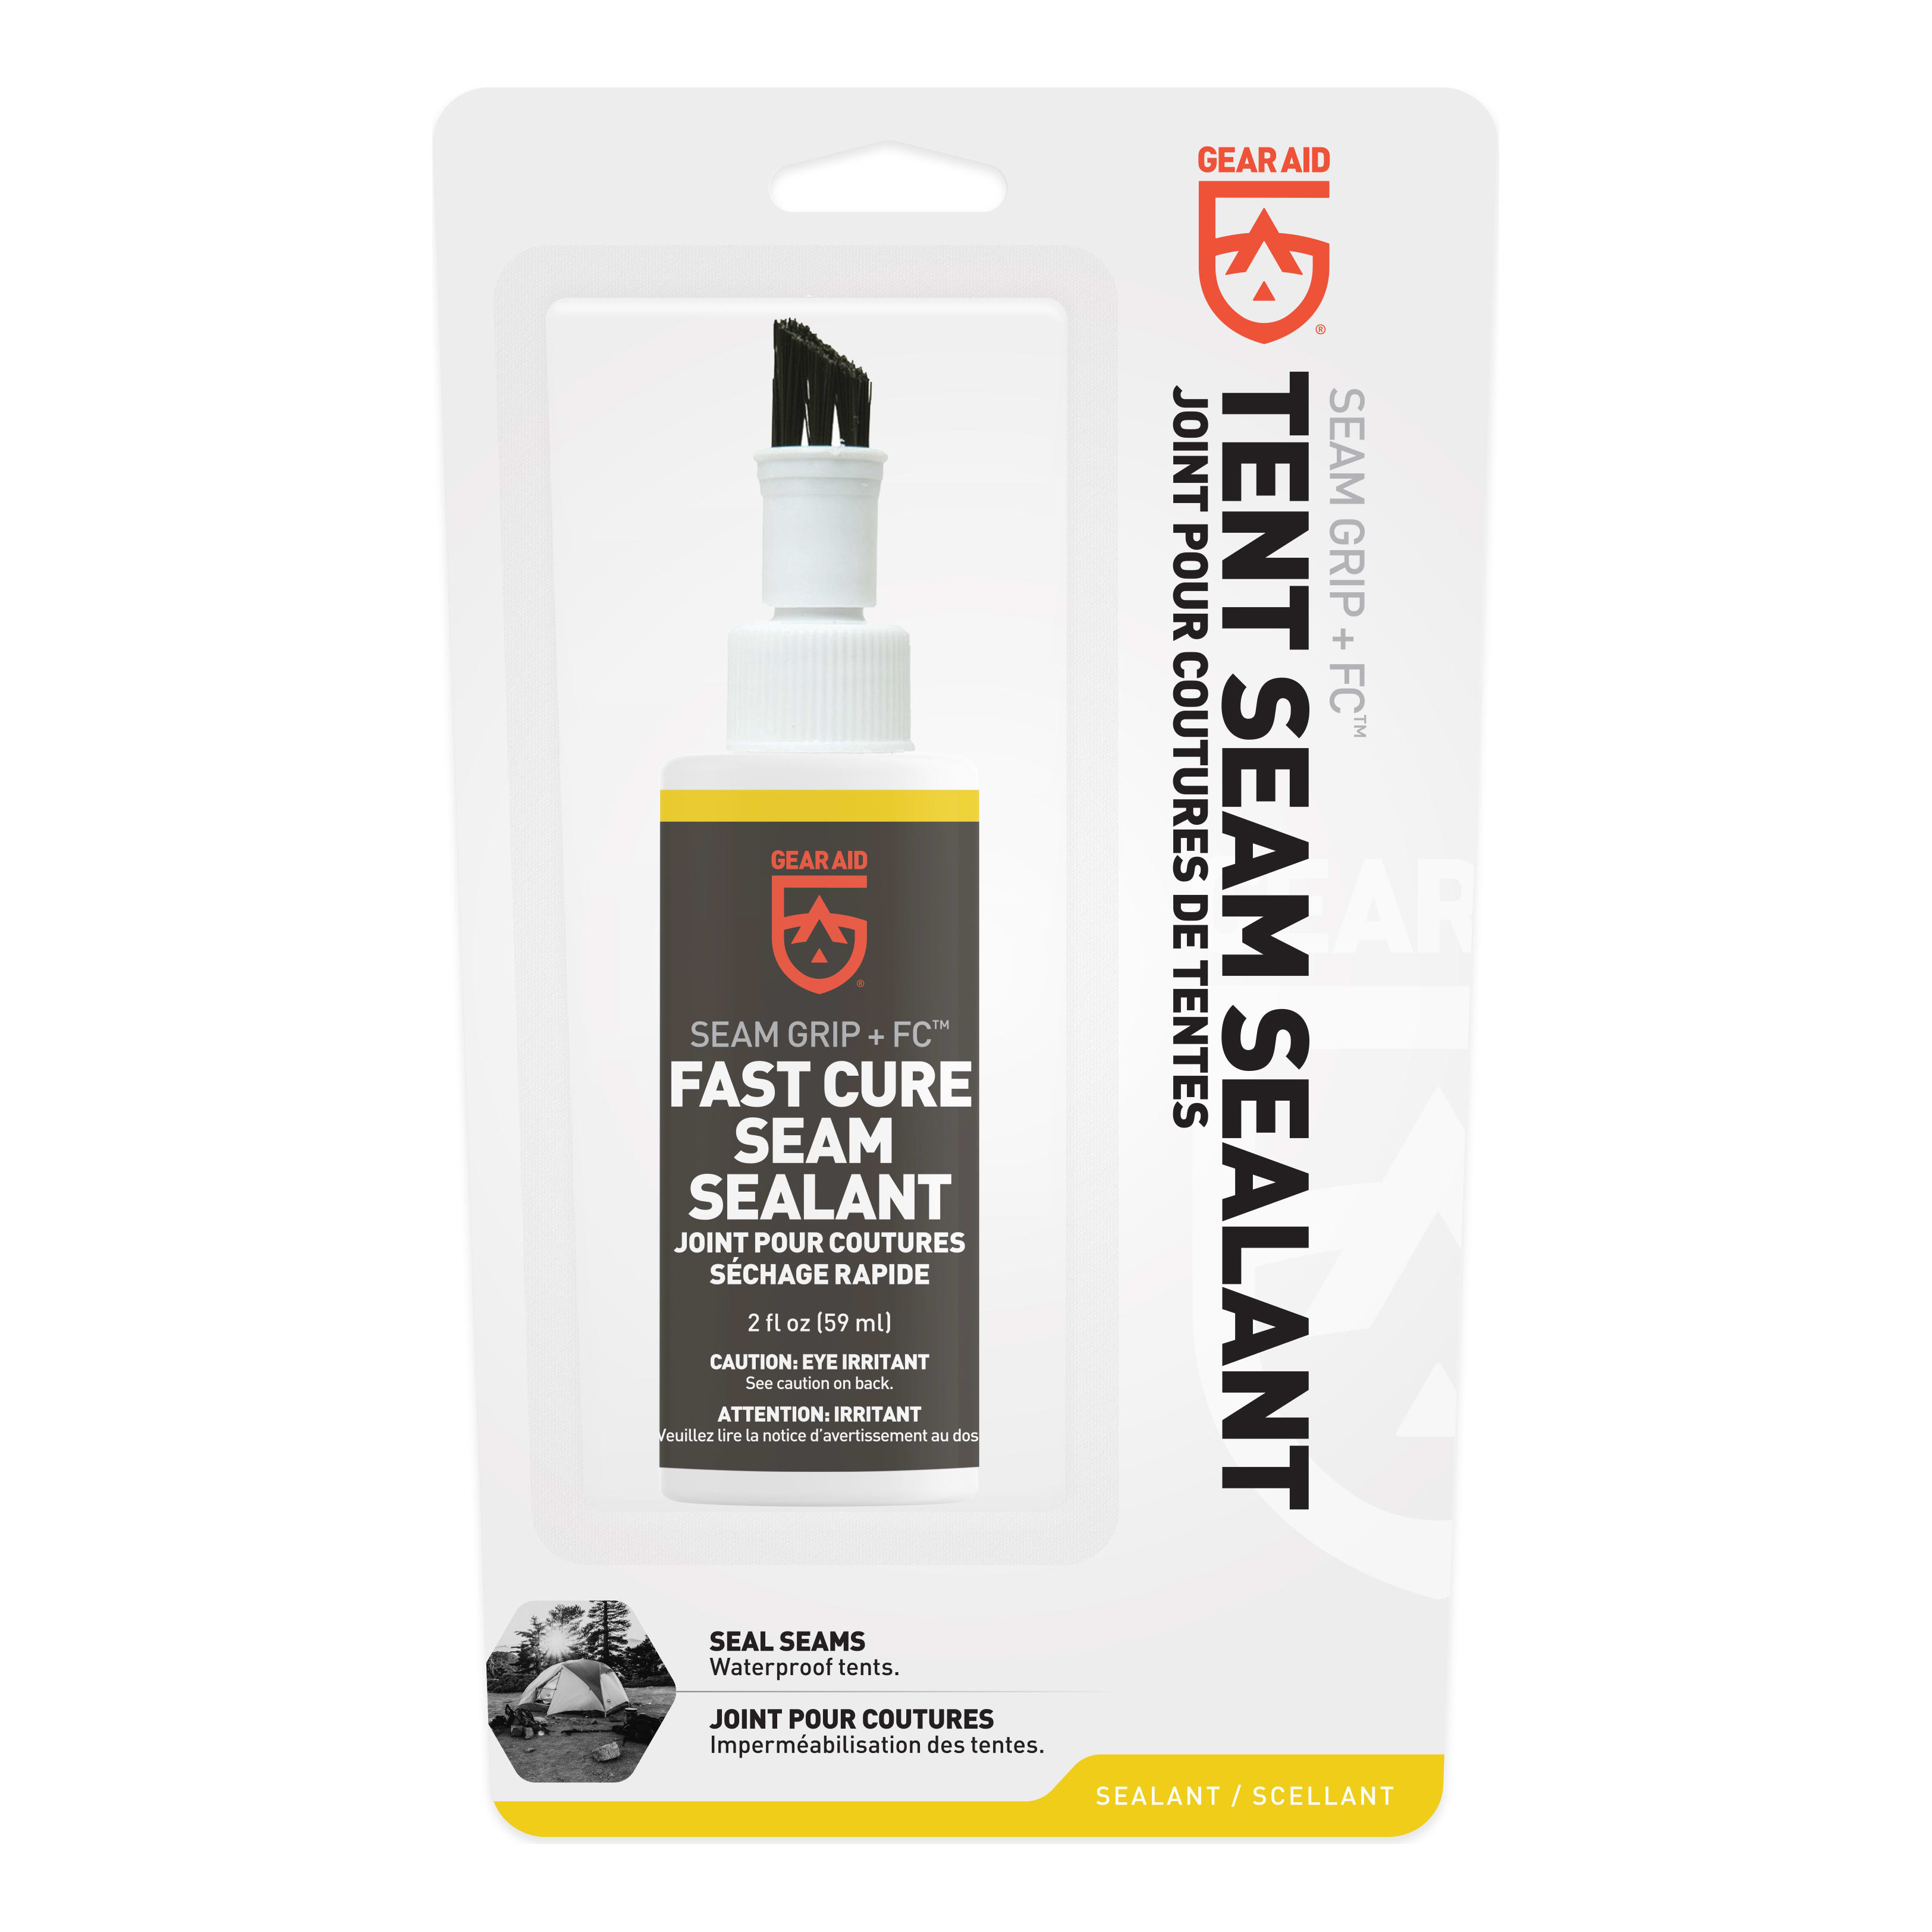 Gear Aid® Seam Grip FC Fast Cure Seam Sealant - Packaging View